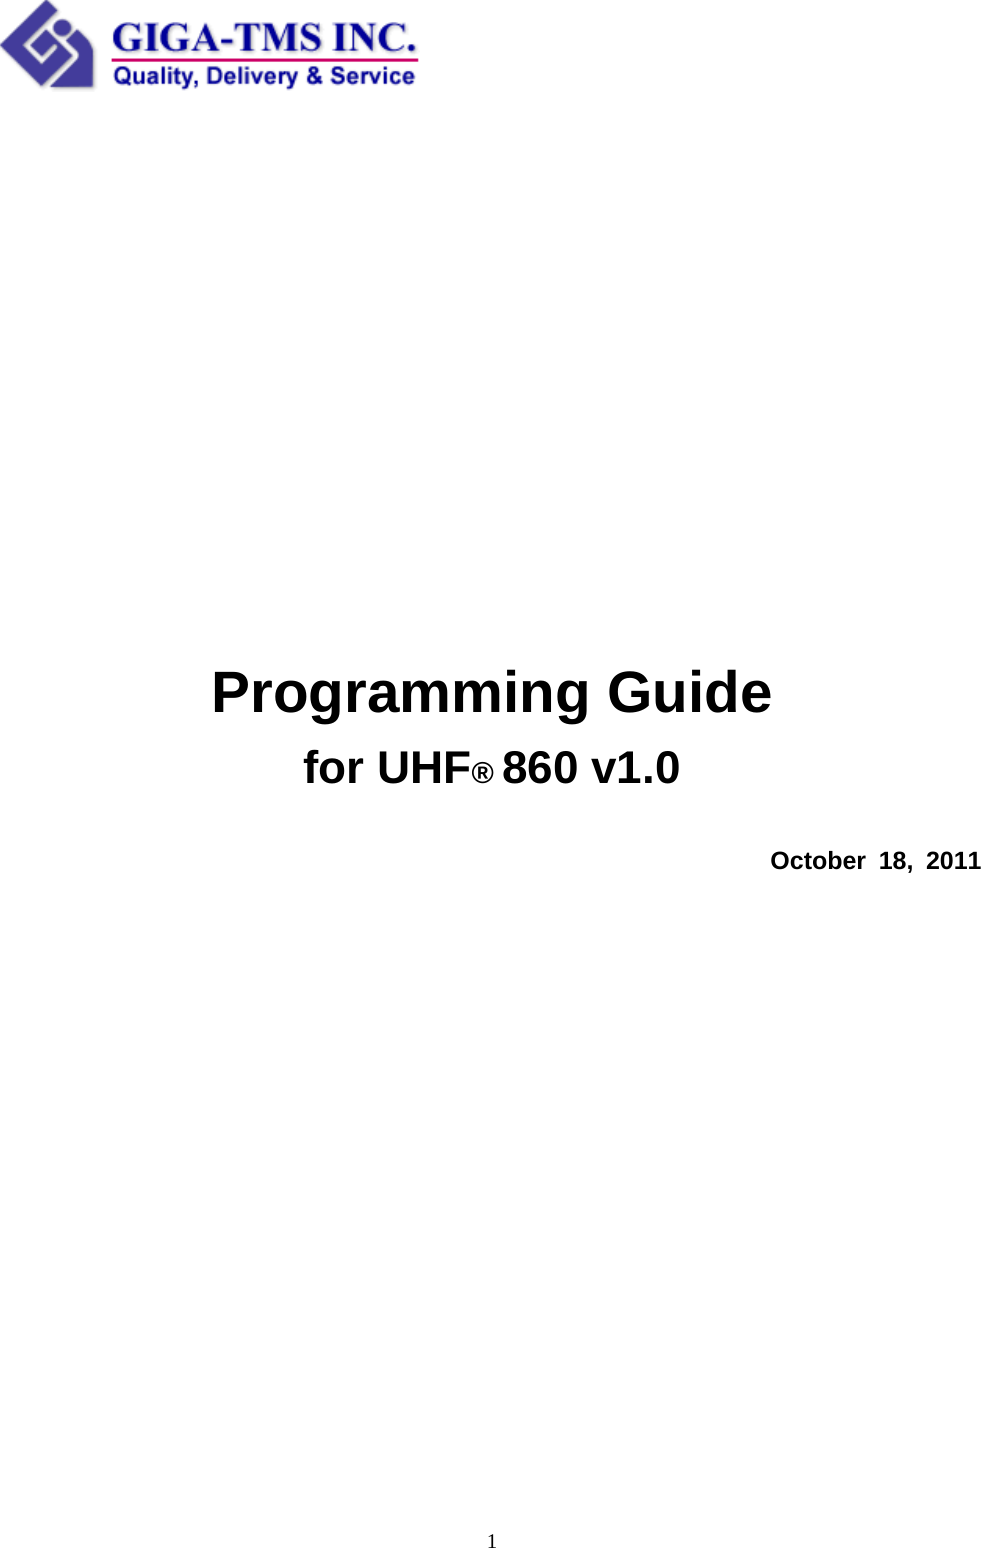  1                Programming Guide for UHF® 860 v1.0   October 18, 2011                   